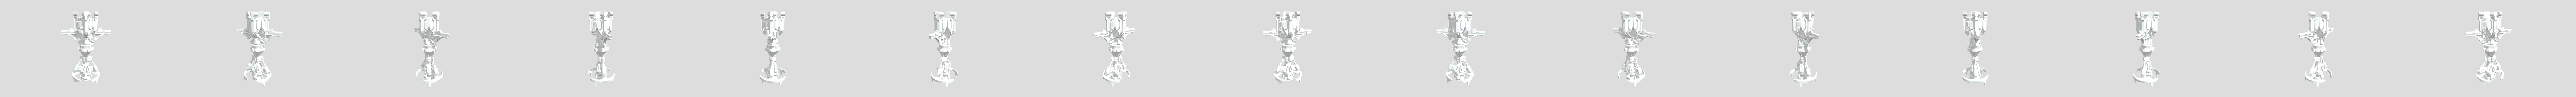 Rook 3D models - Sketchfab